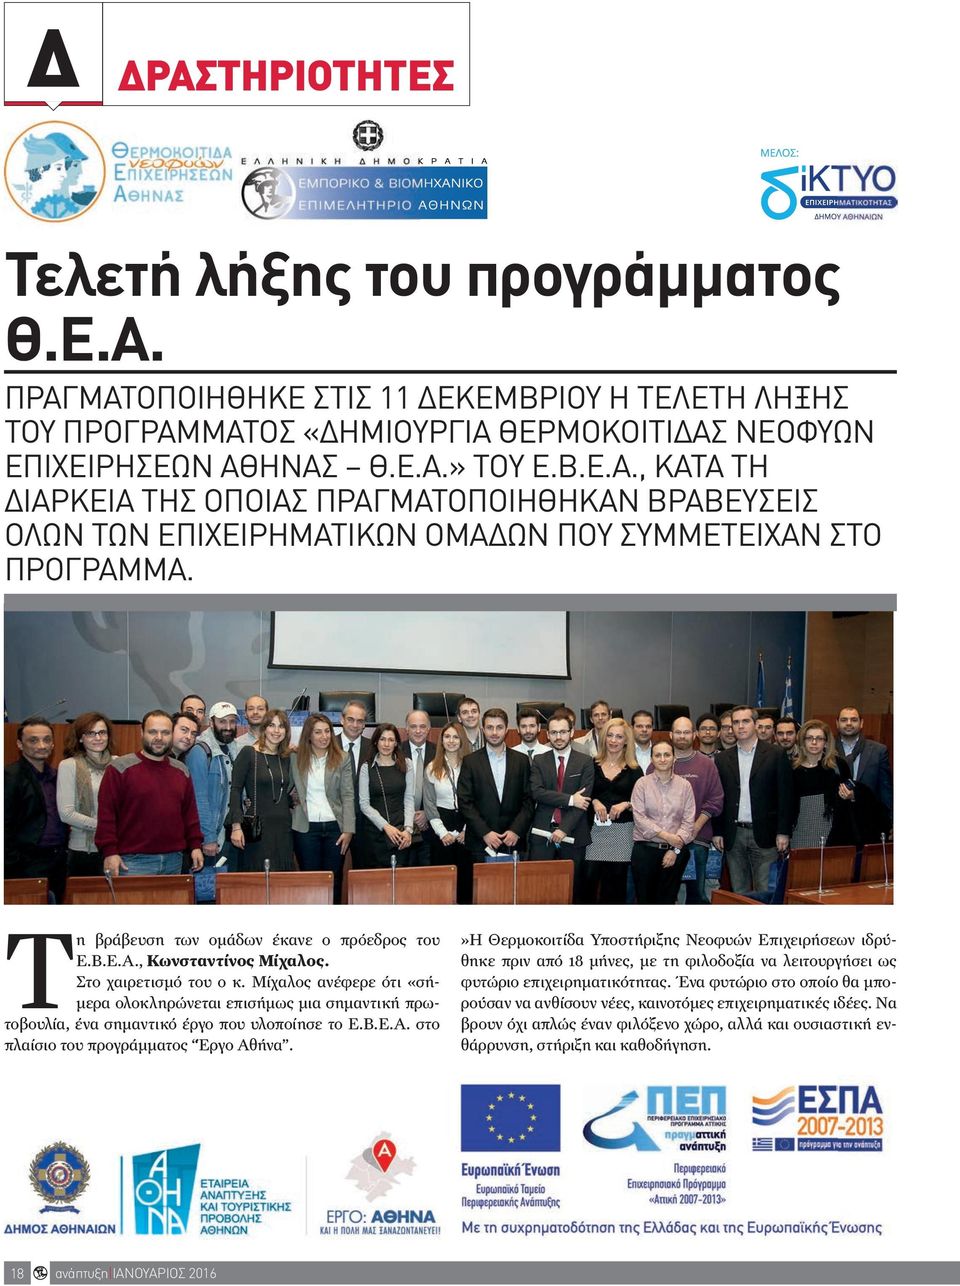 Μίχαλος ανέφερε ότι «σήμερα ολοκληρώνεται επισήμως μια σημαντική πρωτοβουλία, ένα σημαντικό έργο που υλοποίησε το Ε.Β.Ε.Α. στο πλαίσιο του προγράμματος Έργο Αθήνα.